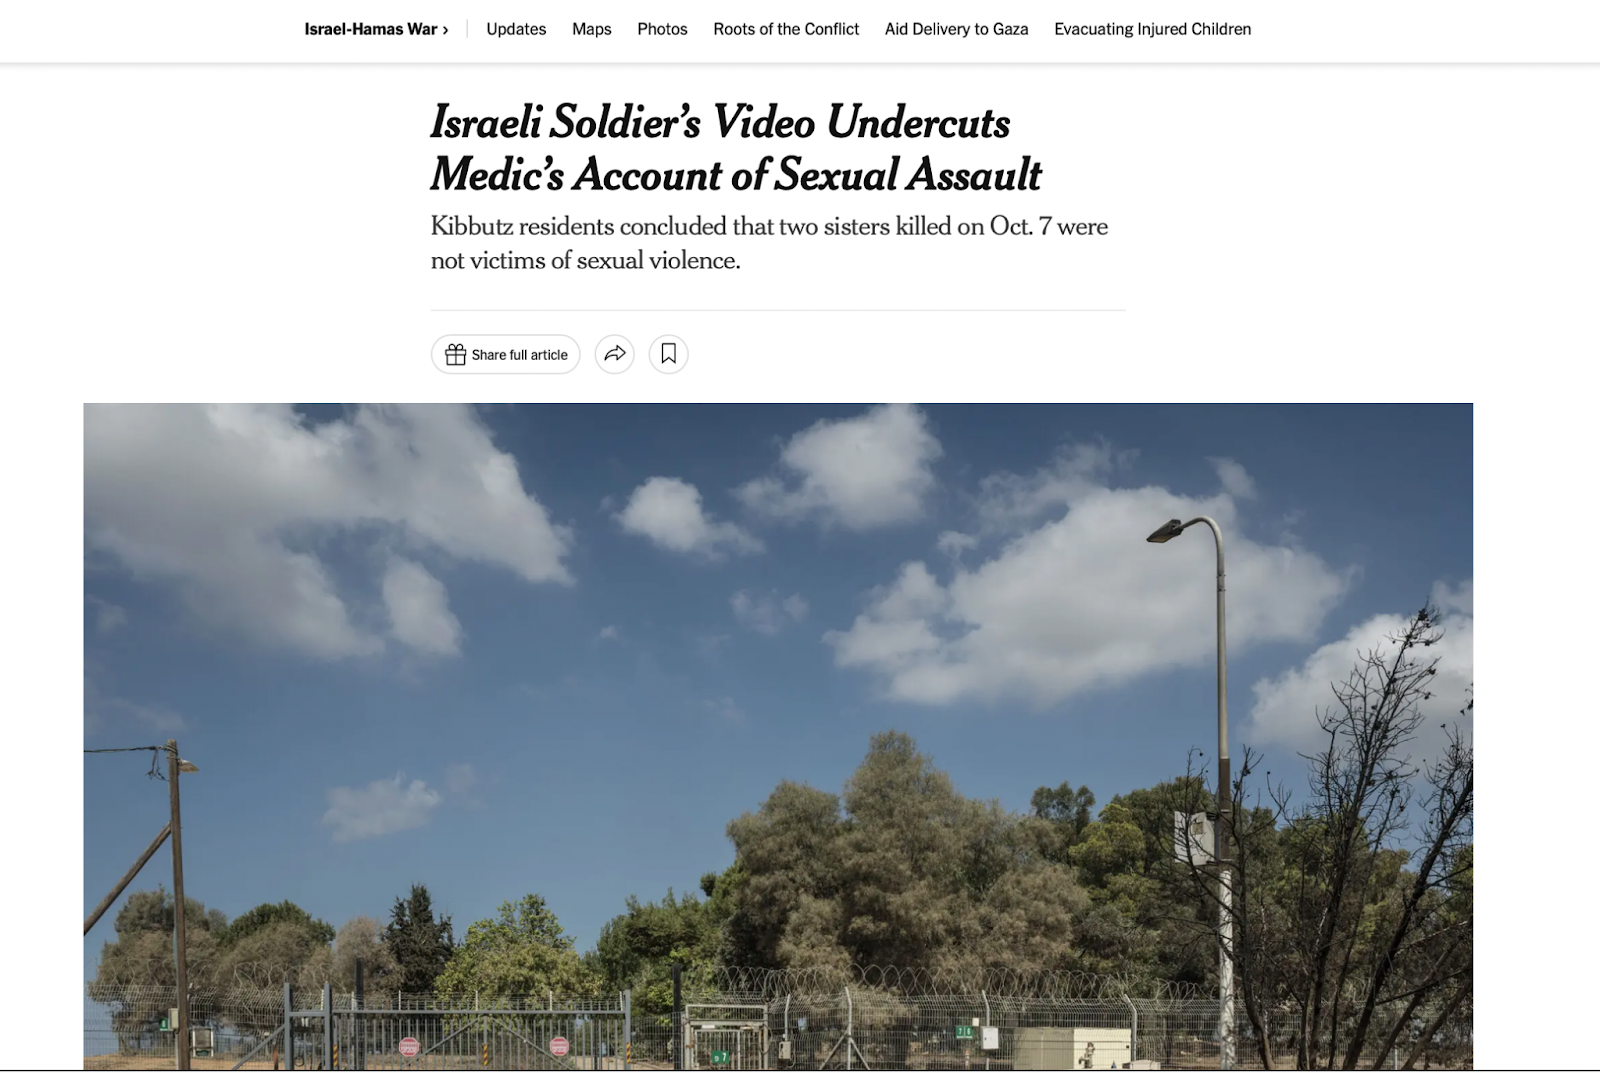 مقال لصحيفة ذا نيويورك تايمز حول فيديو لجندي إسرائيلي قوض رواية مسعف عن وجود اعتداء جنسي في كيبوتس بئيري